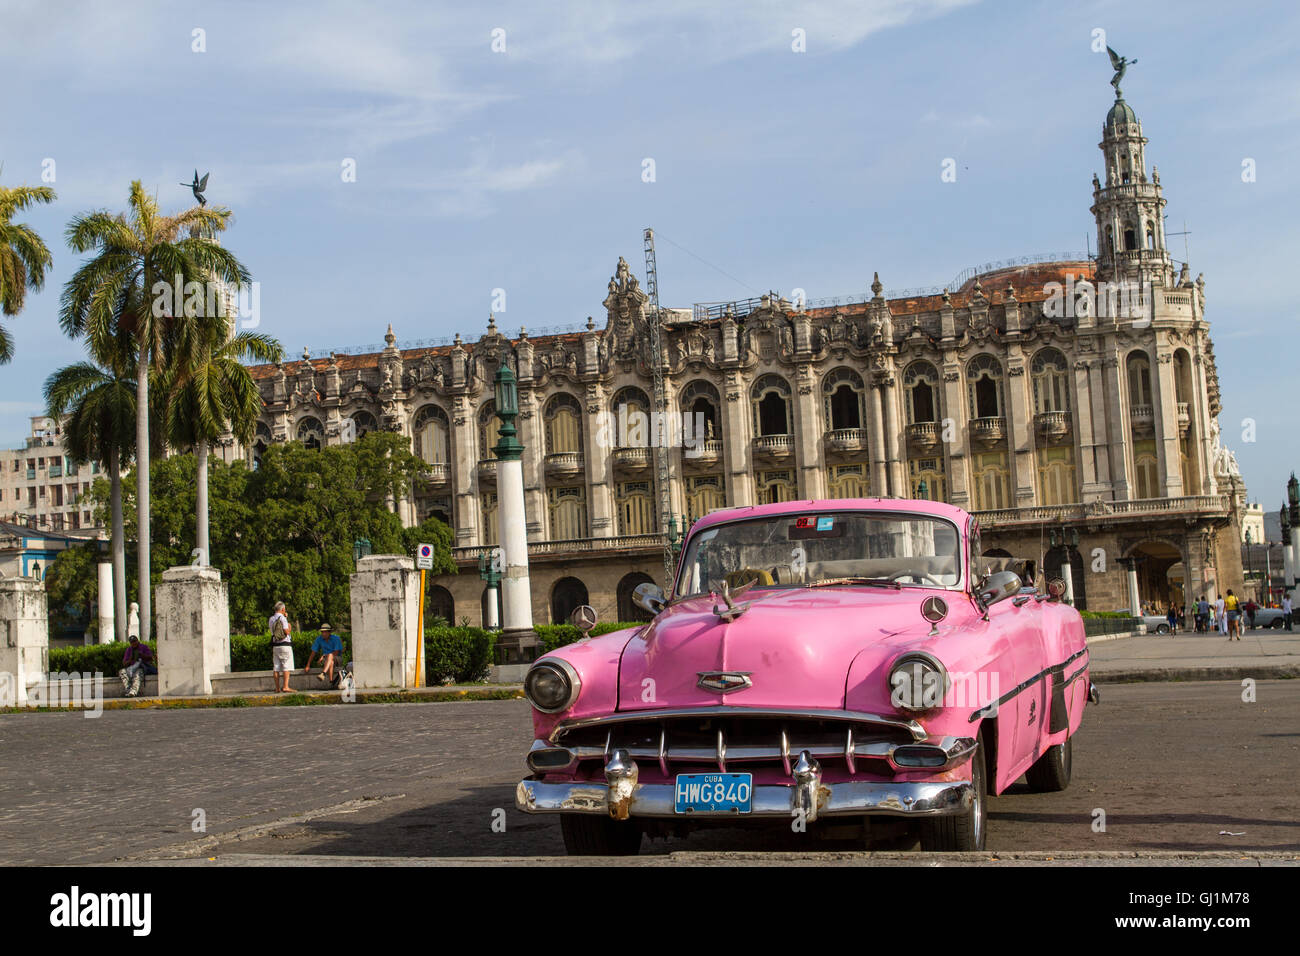 Pink open-top vintage car, Havana, Cuna, 2013 Stock Photo